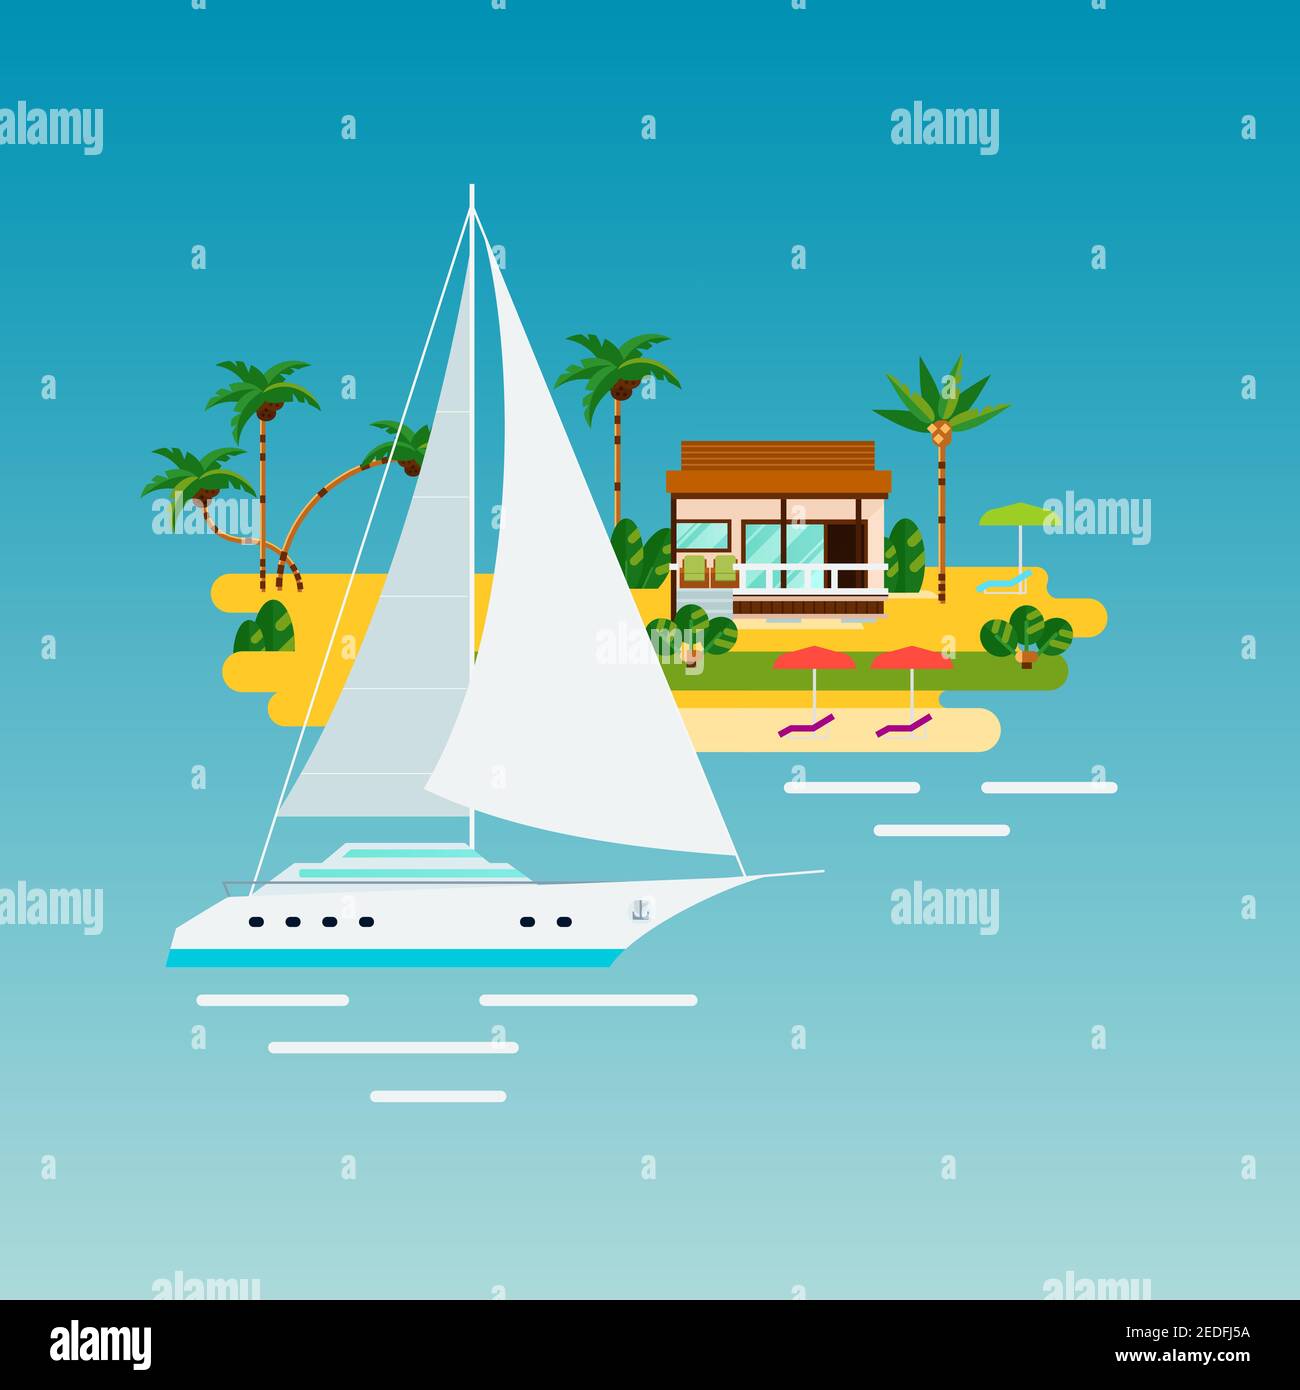 Île tropicale composition de vacances avec des images plates de l'océan yacht et une île de sable avec des palmiers et une illustration vectorielle de la maison Illustration de Vecteur